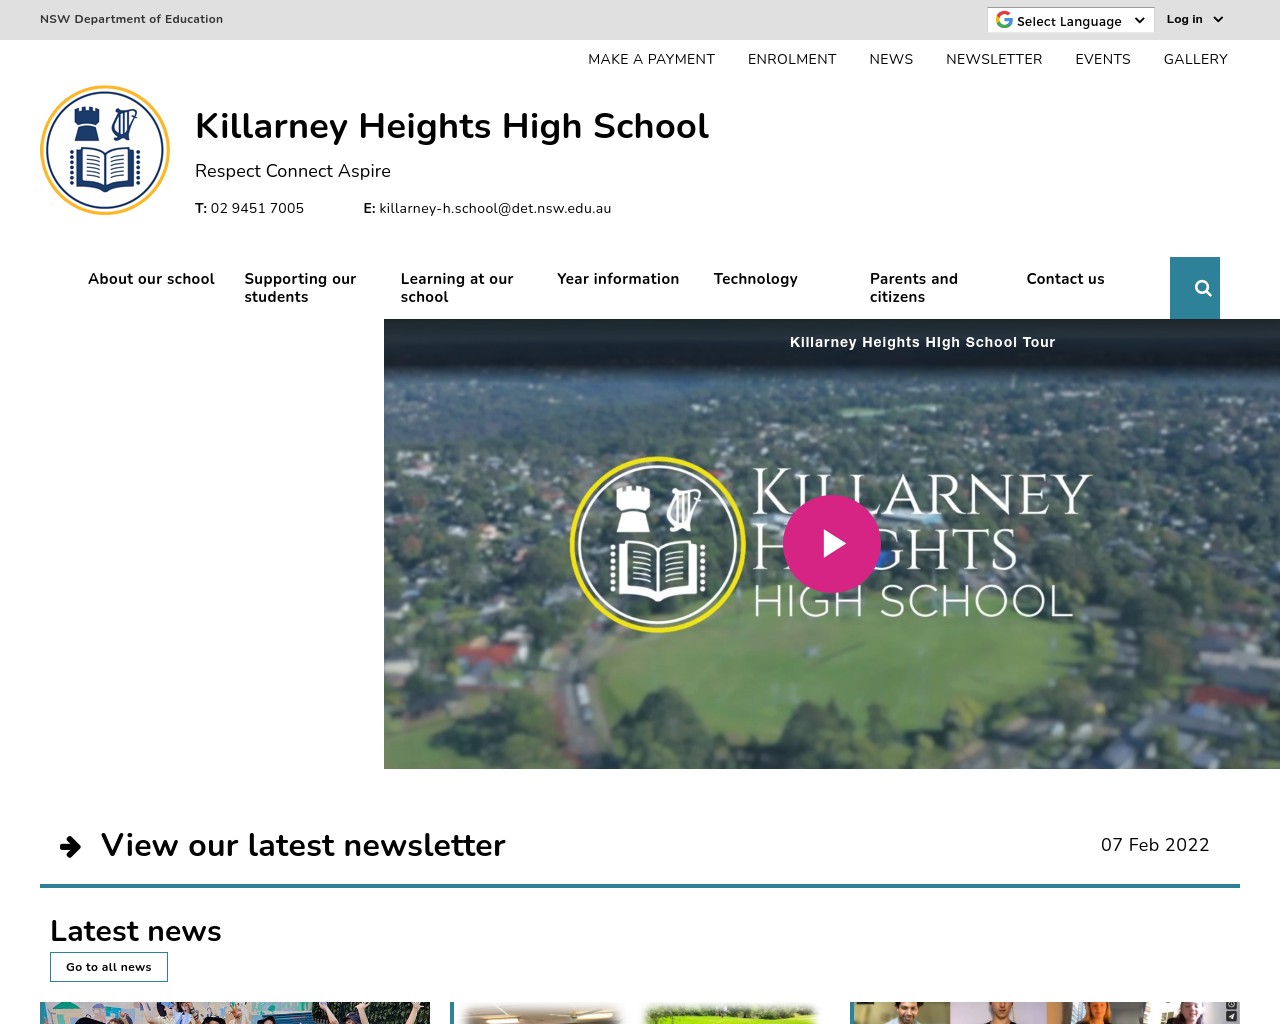 Killarney Heights High School